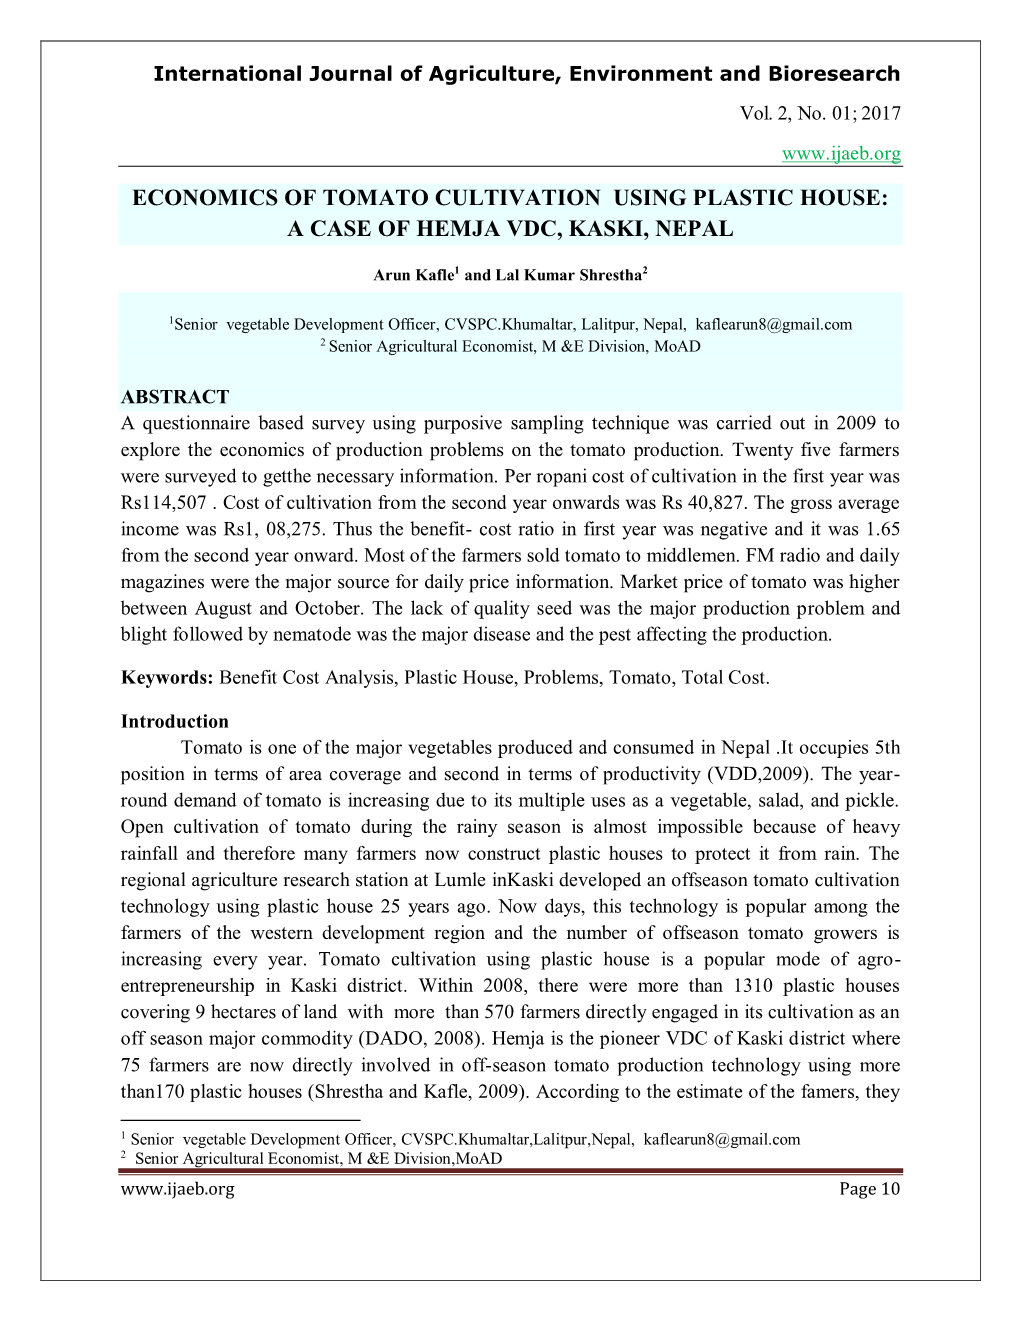 Economics of Tomato Cultivation Using Plastic House: a Case of Hemja Vdc, Kaski, Nepal